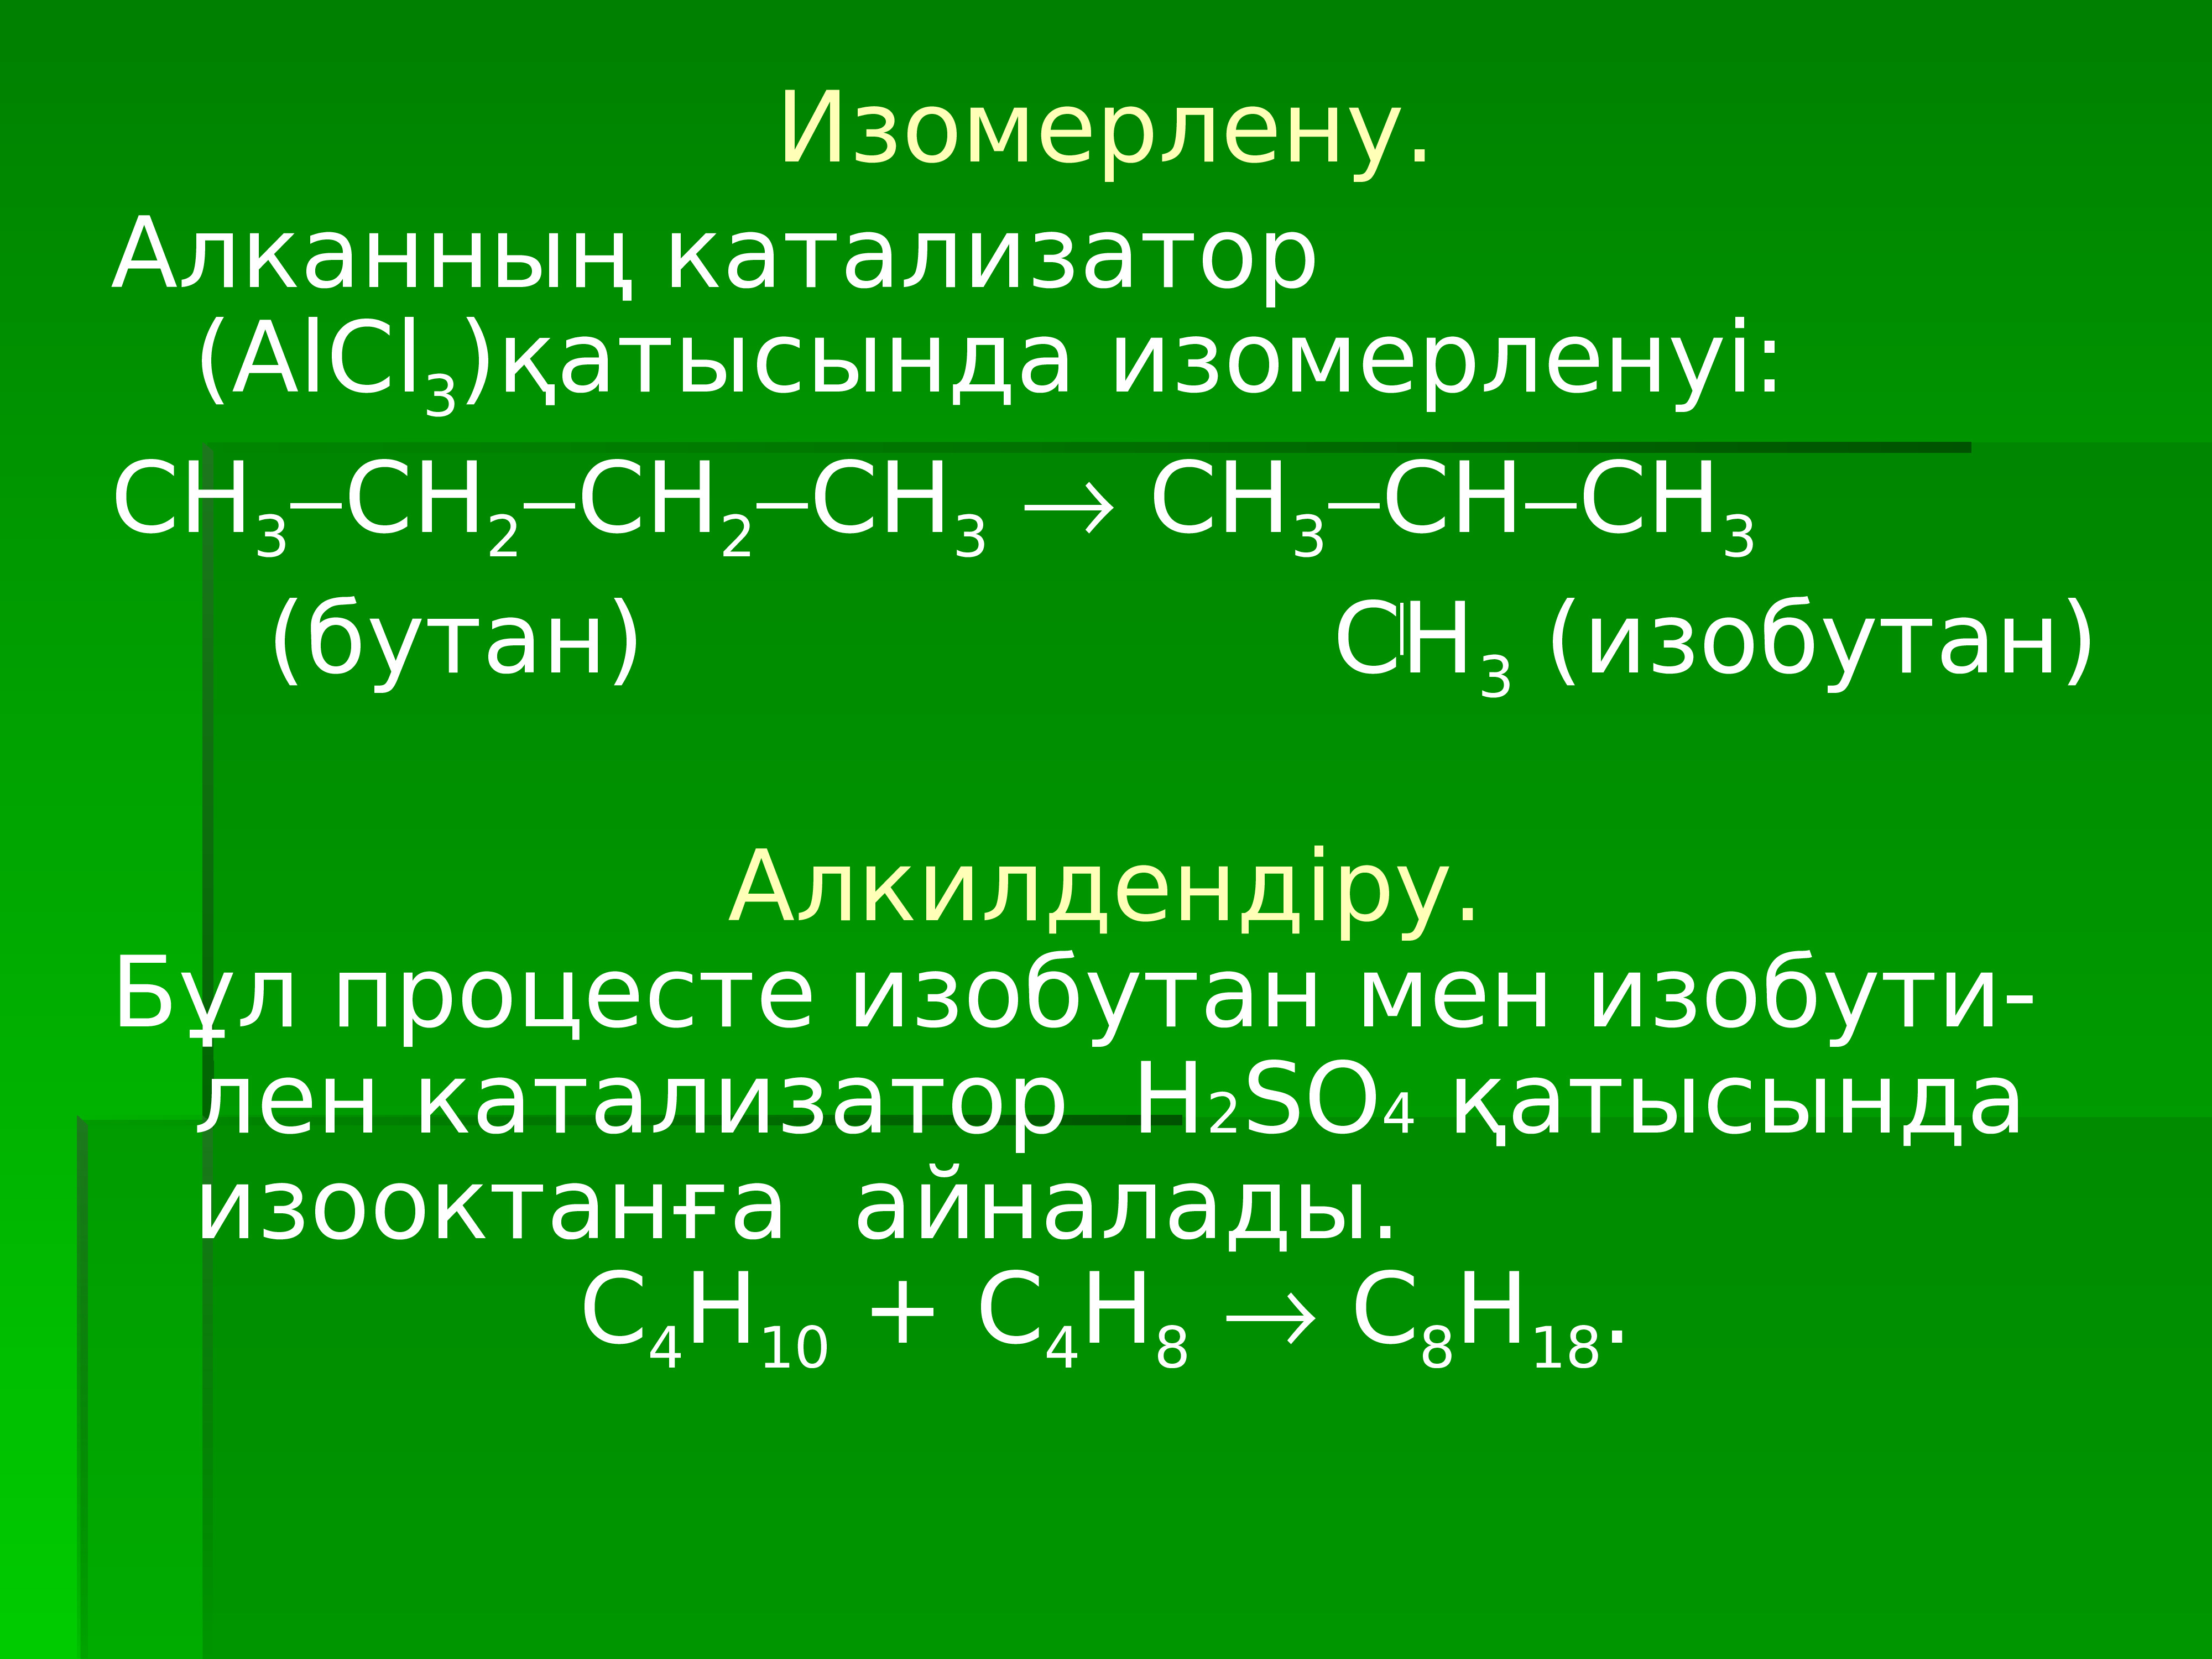 Бутан alcl3. Alcl3 катализатор. Бутан катализатор alcl3. Изобутан катализатор h 2.